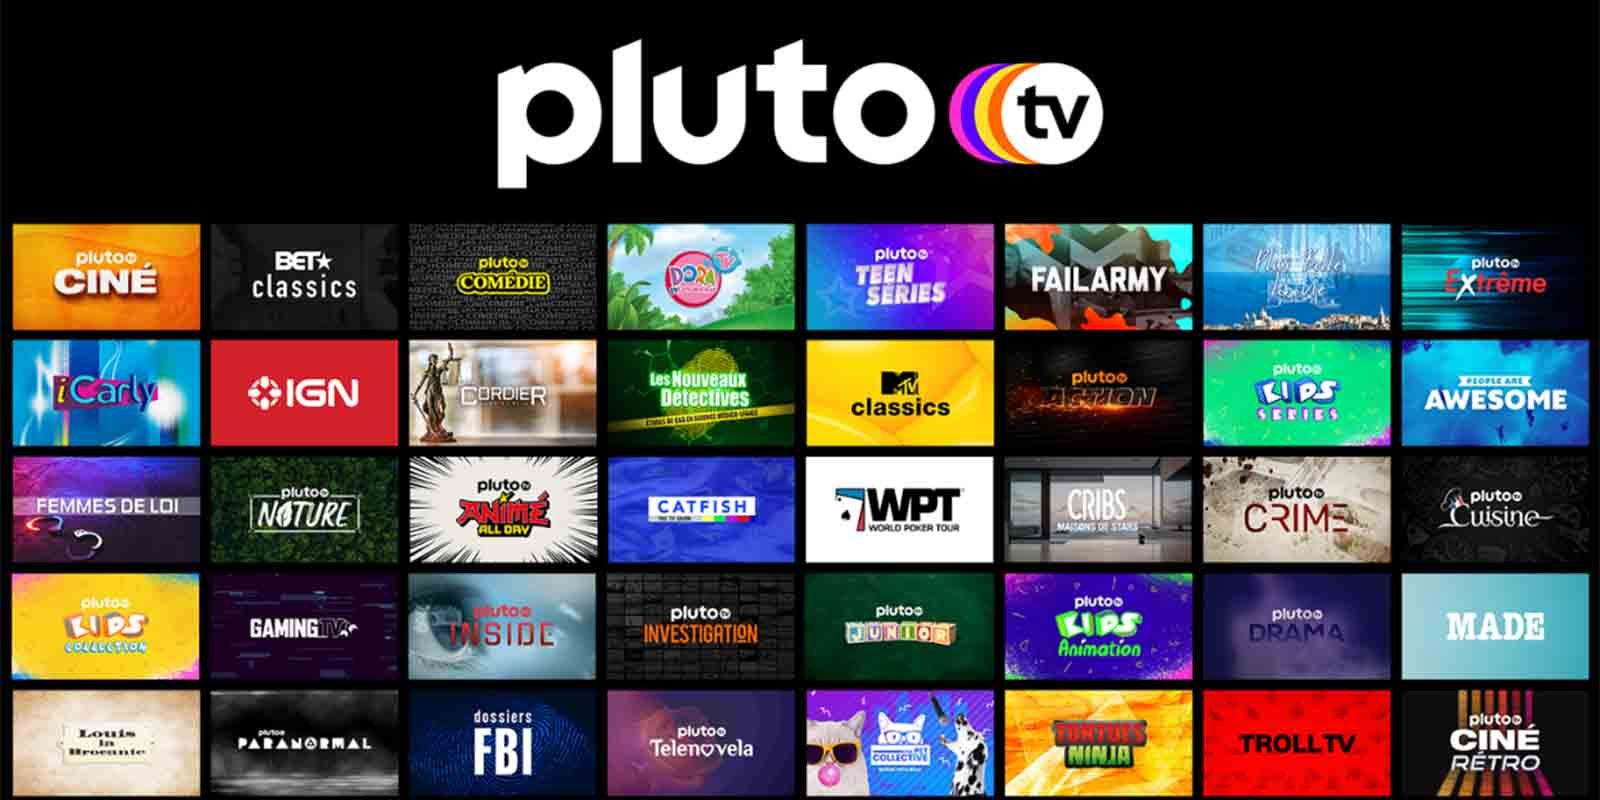 Cómo ver series y películas gratis online en español a través de